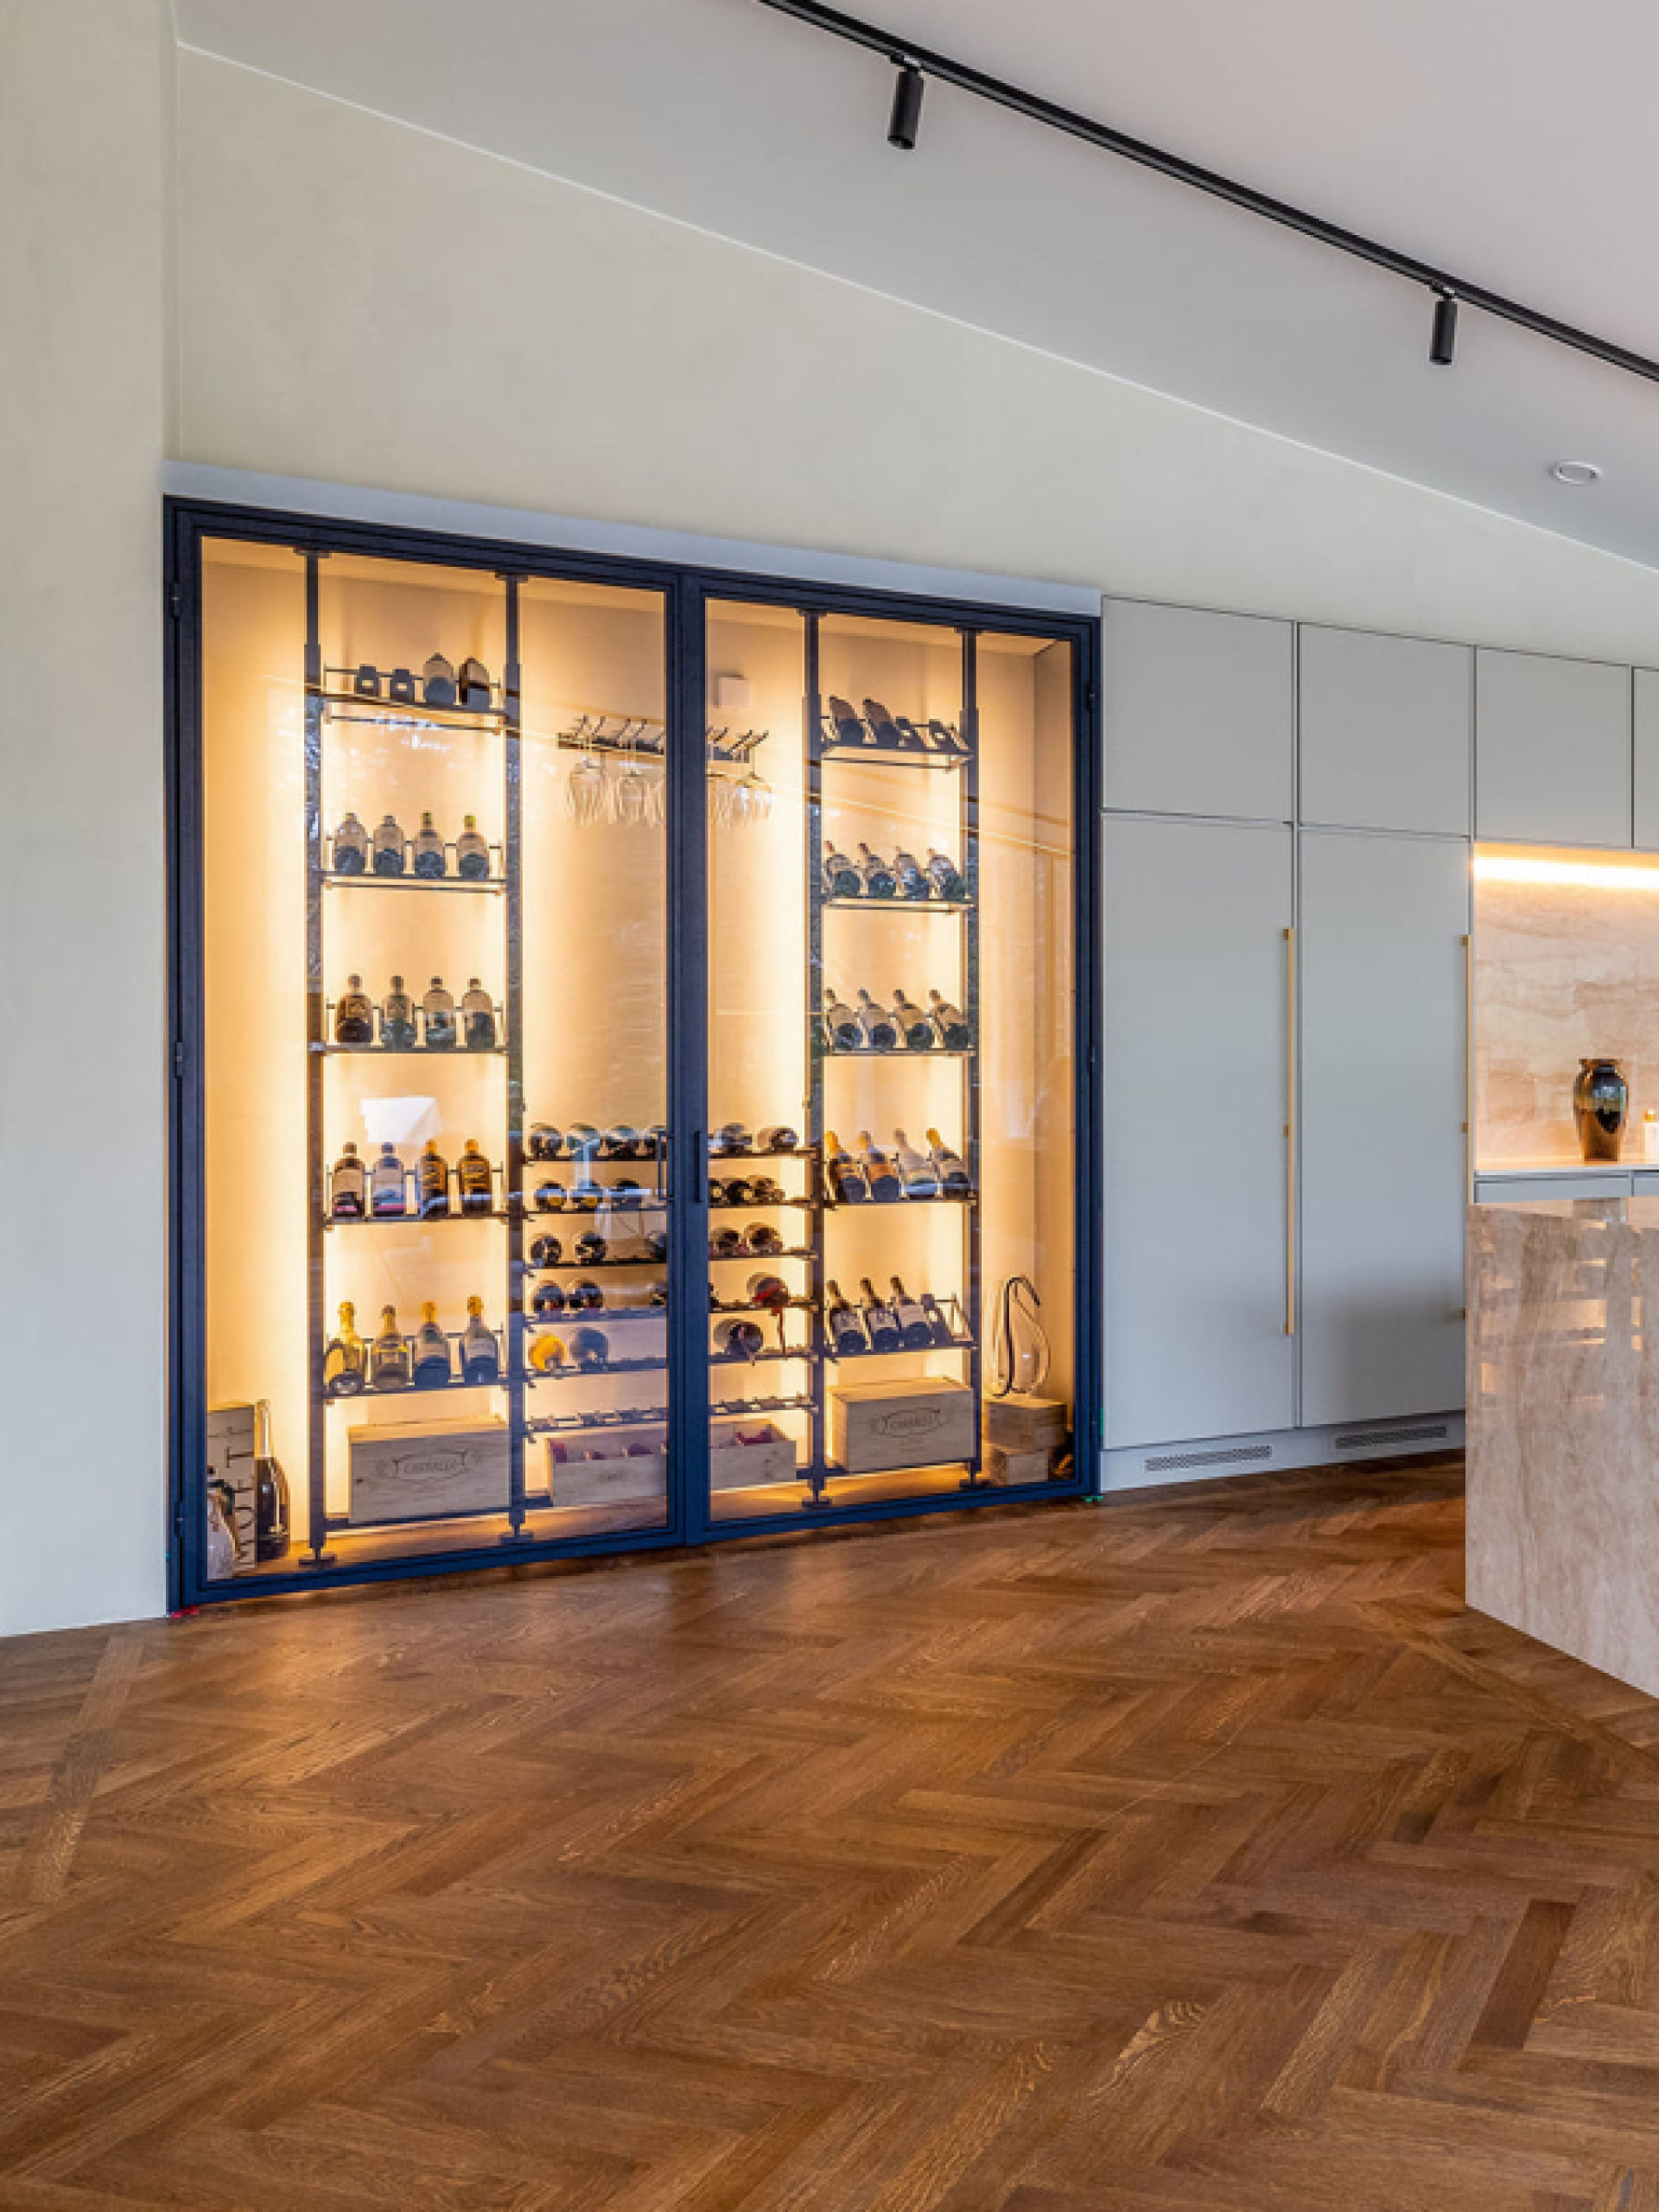 Beispiel einer Weinlagerung aus Metall in einem luxuriösen Interieur in Dänemark